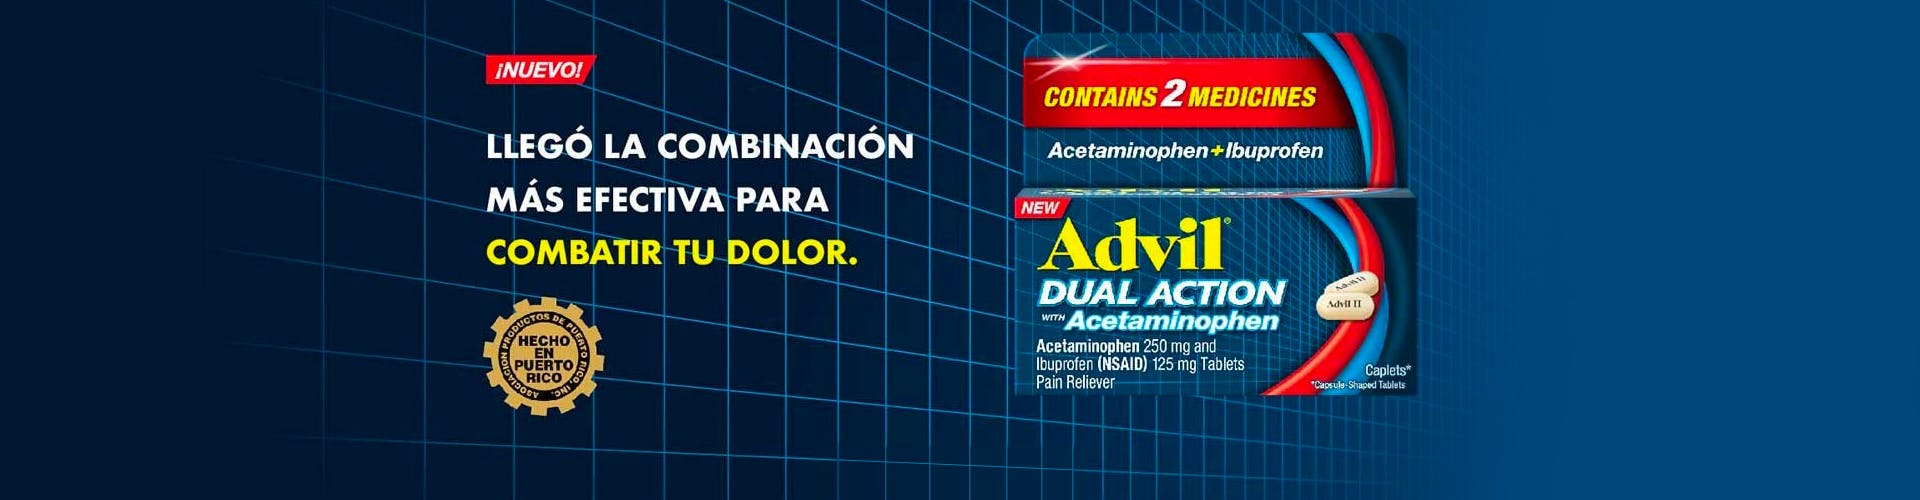 Advil Dual Action con acetaminofén sobre el fondo azul marino